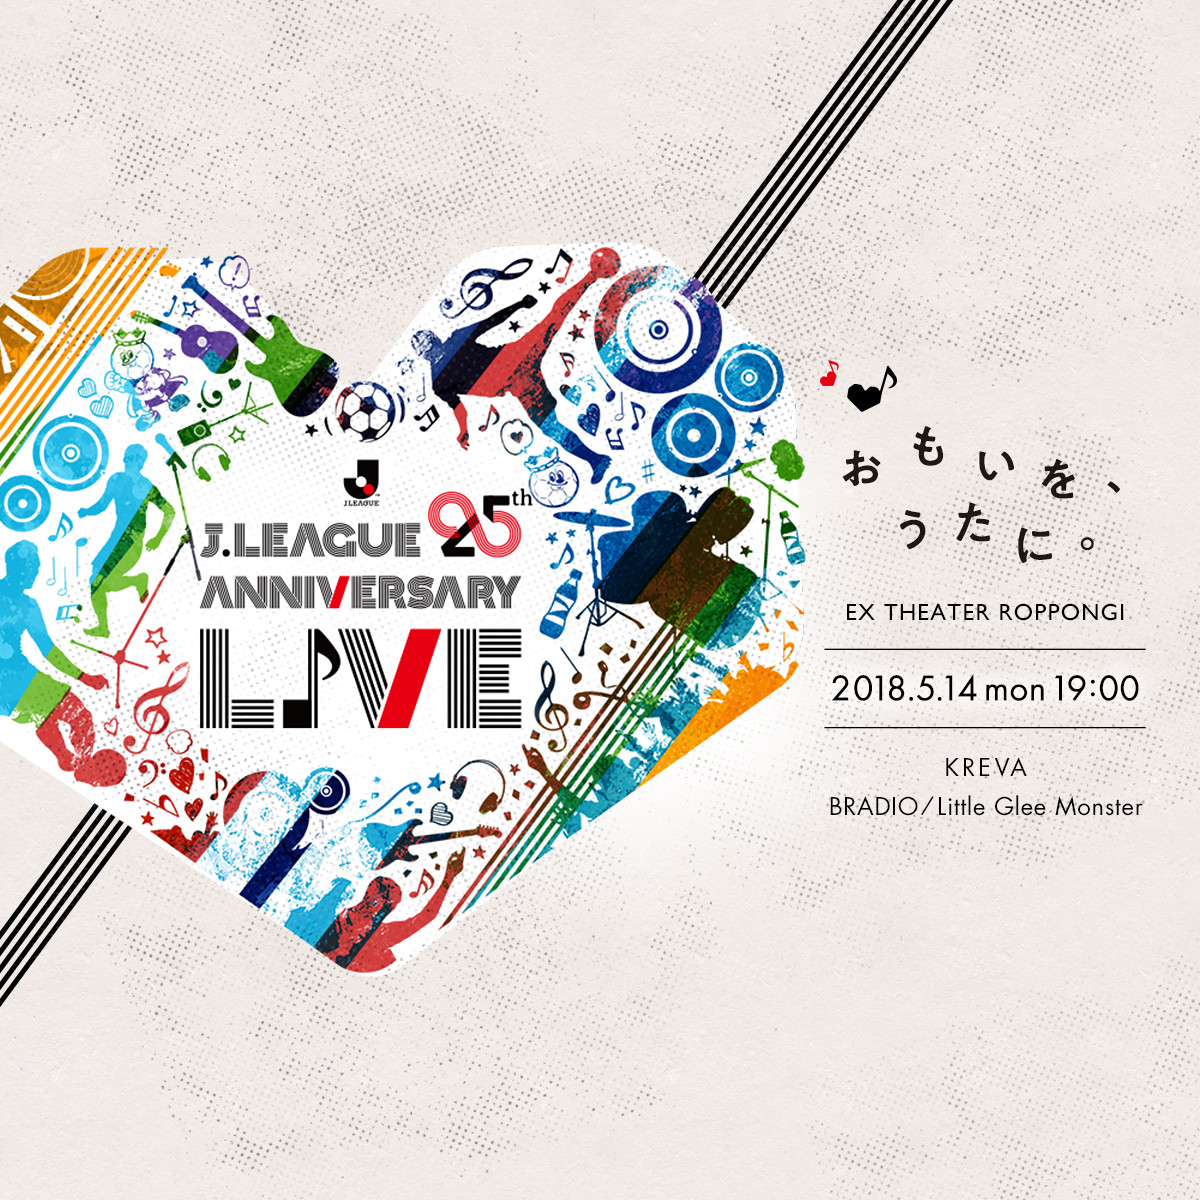 J League 25th Anniversary Live ｊリーグ25周年アニバーサリーライブ おもいを うたに 25周年の感謝を込めたプレミアイベントへご招待 ｊリーグ Jp